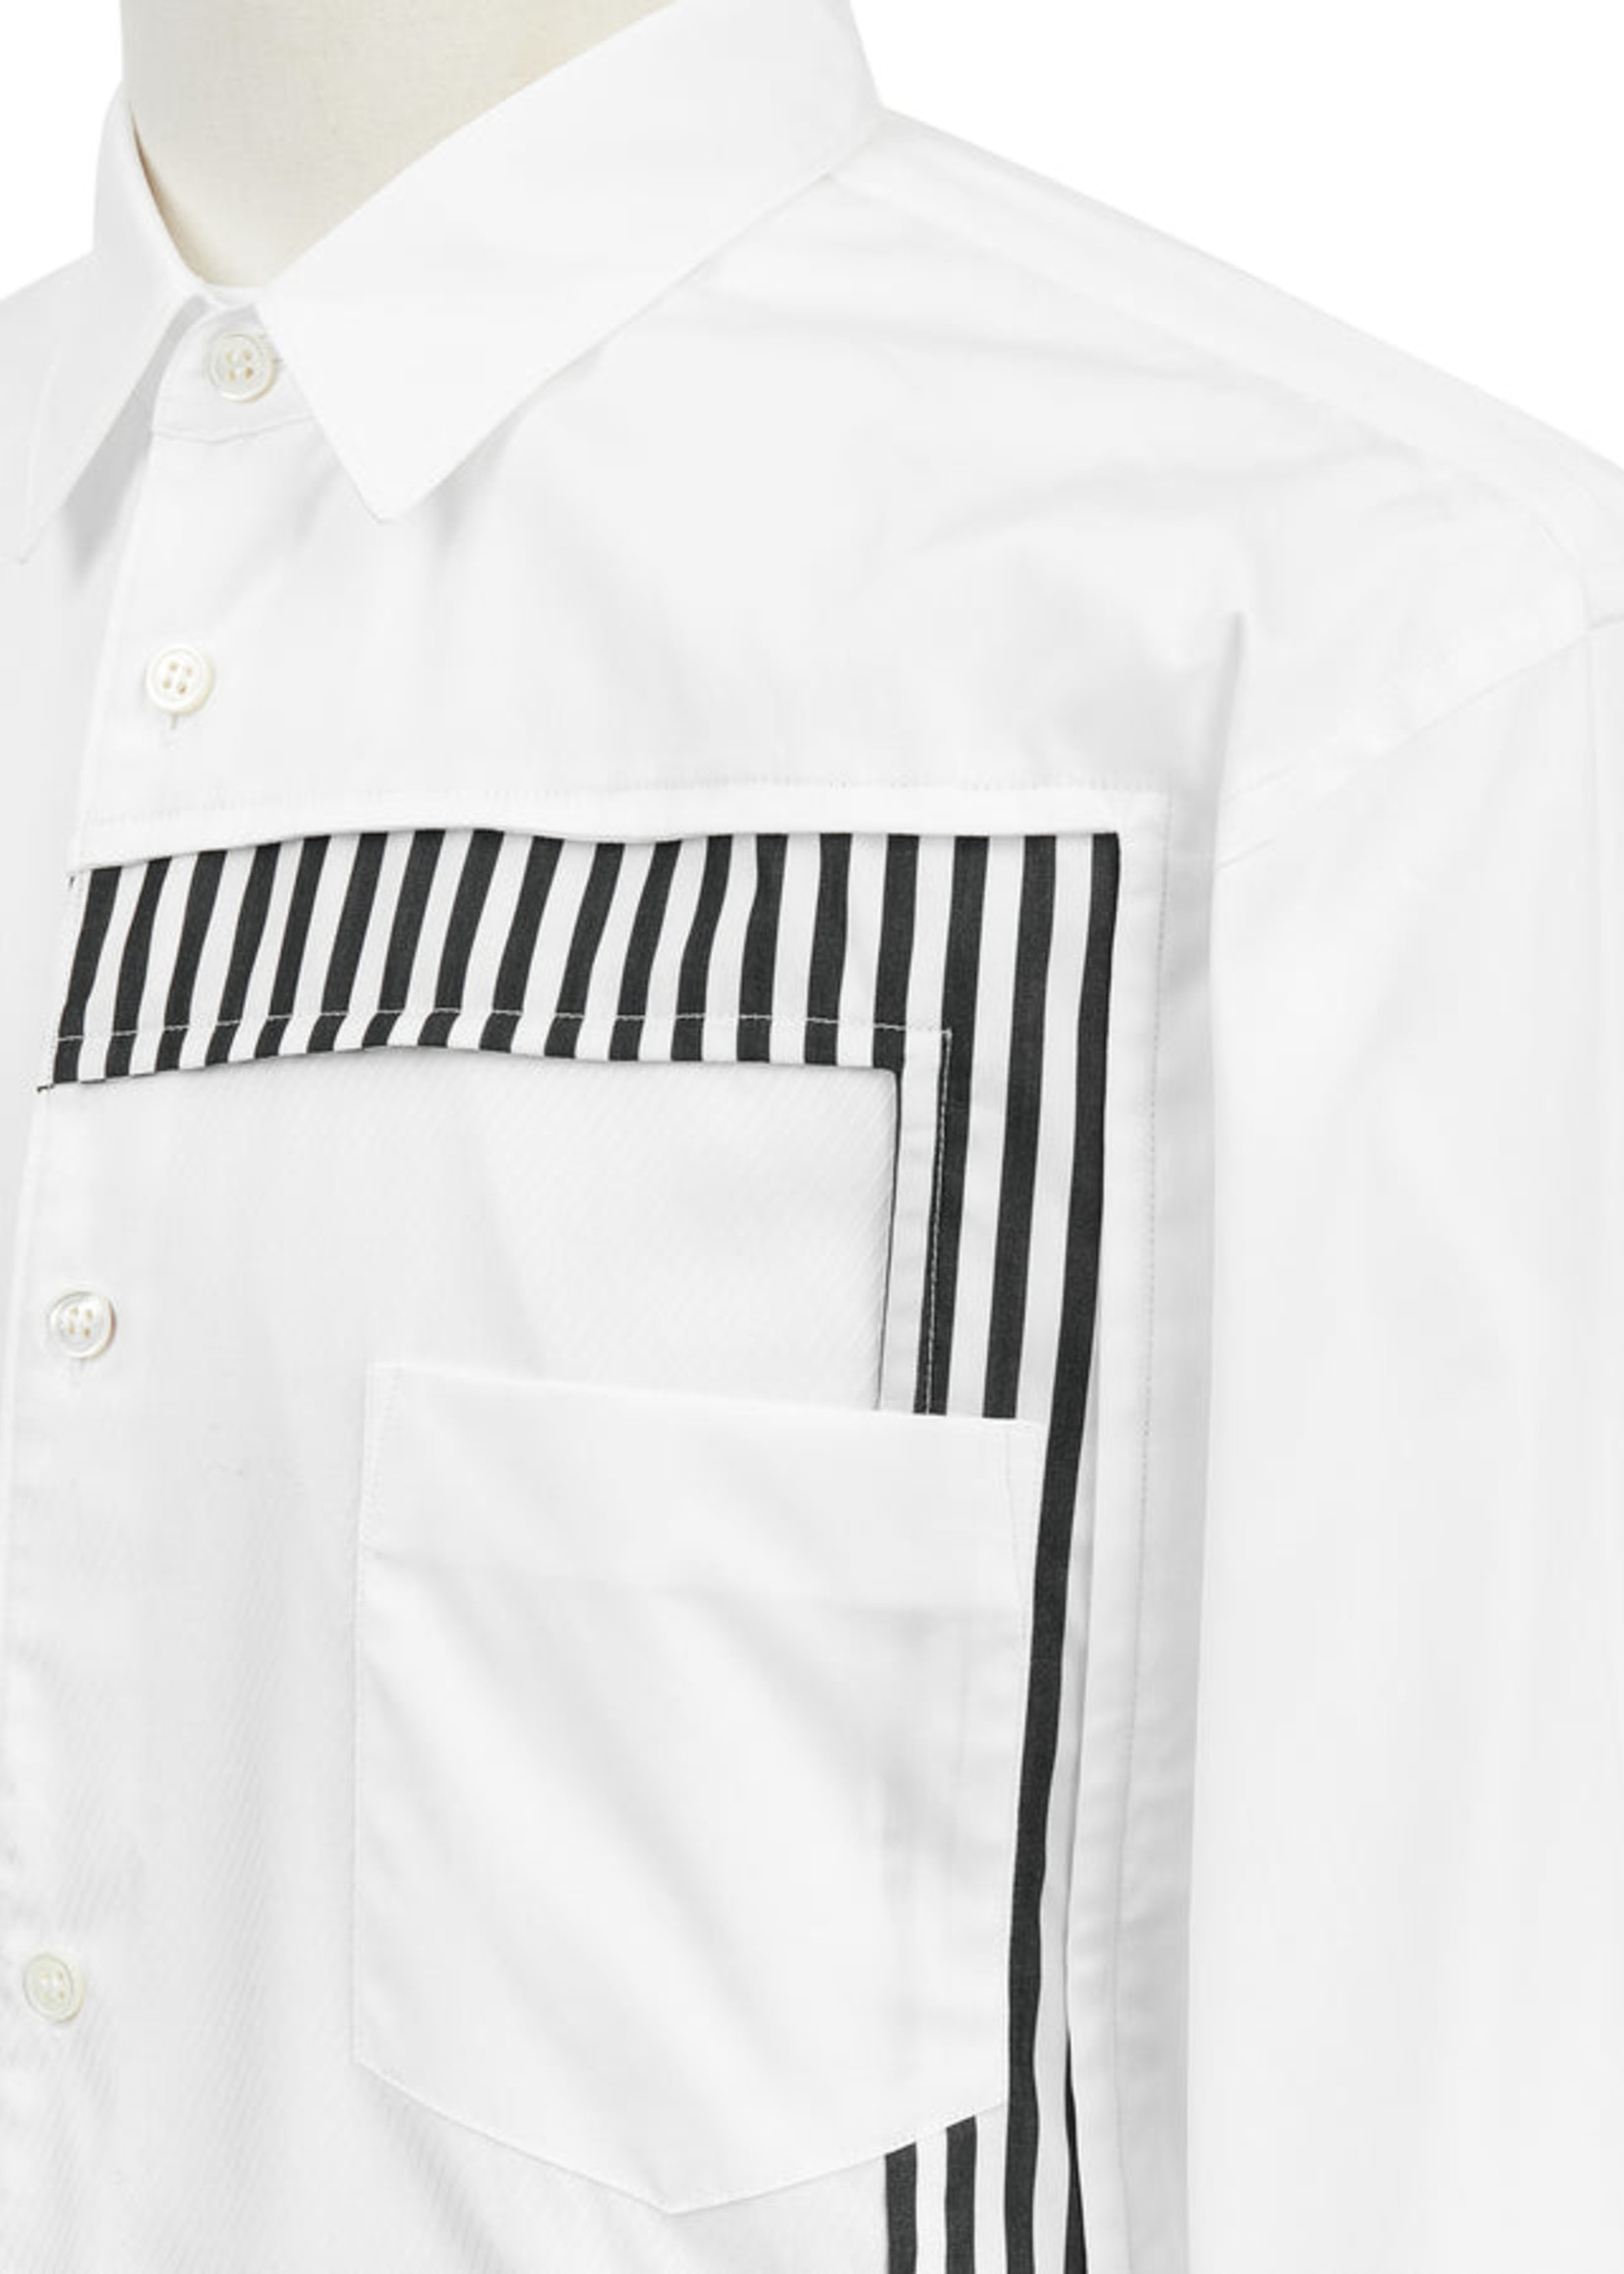 COMME des GARÇONS SHIRT White Button Up Shirt With Stripe inset Bubble